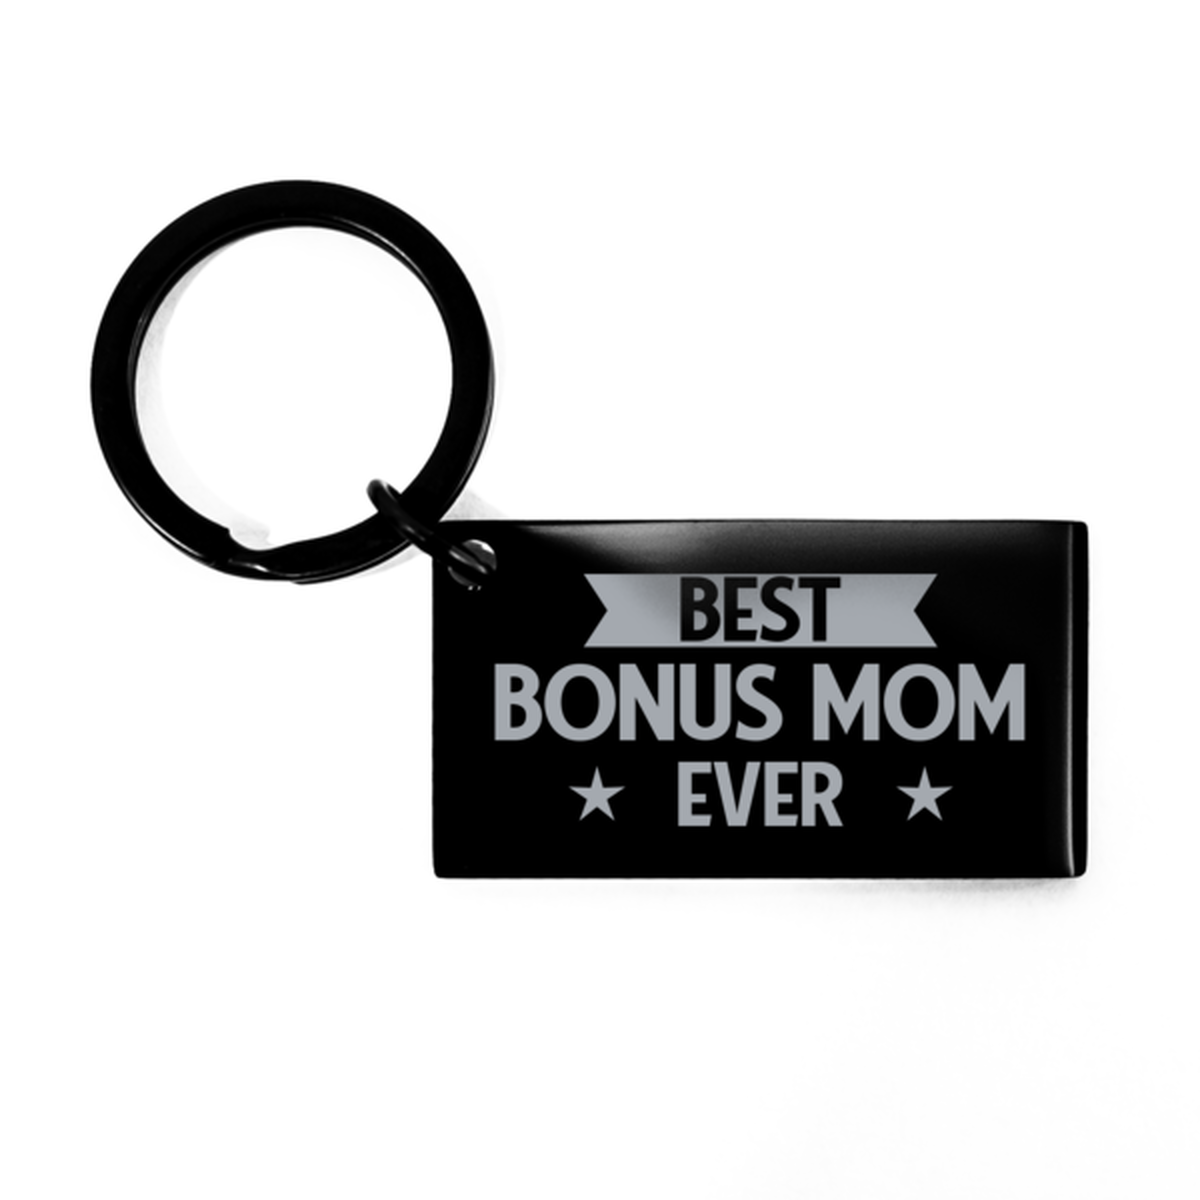 Best Bonus Mom Ever Bonus Mom Gifts, Funny Black Keychain For Bonus Mom, Birthday Engraved Keyring Presents For Women